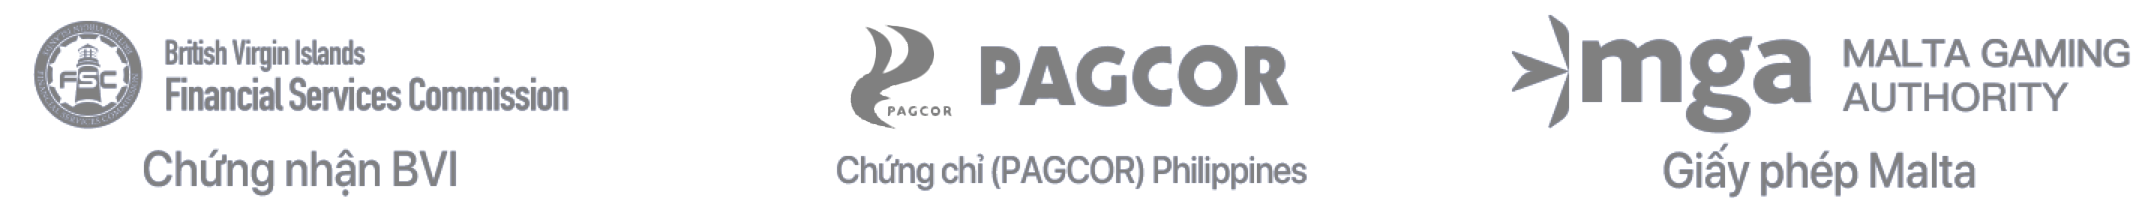 giấy chứng nhận từ BVI, PAGCOR Philippines, Giấy phép Malta